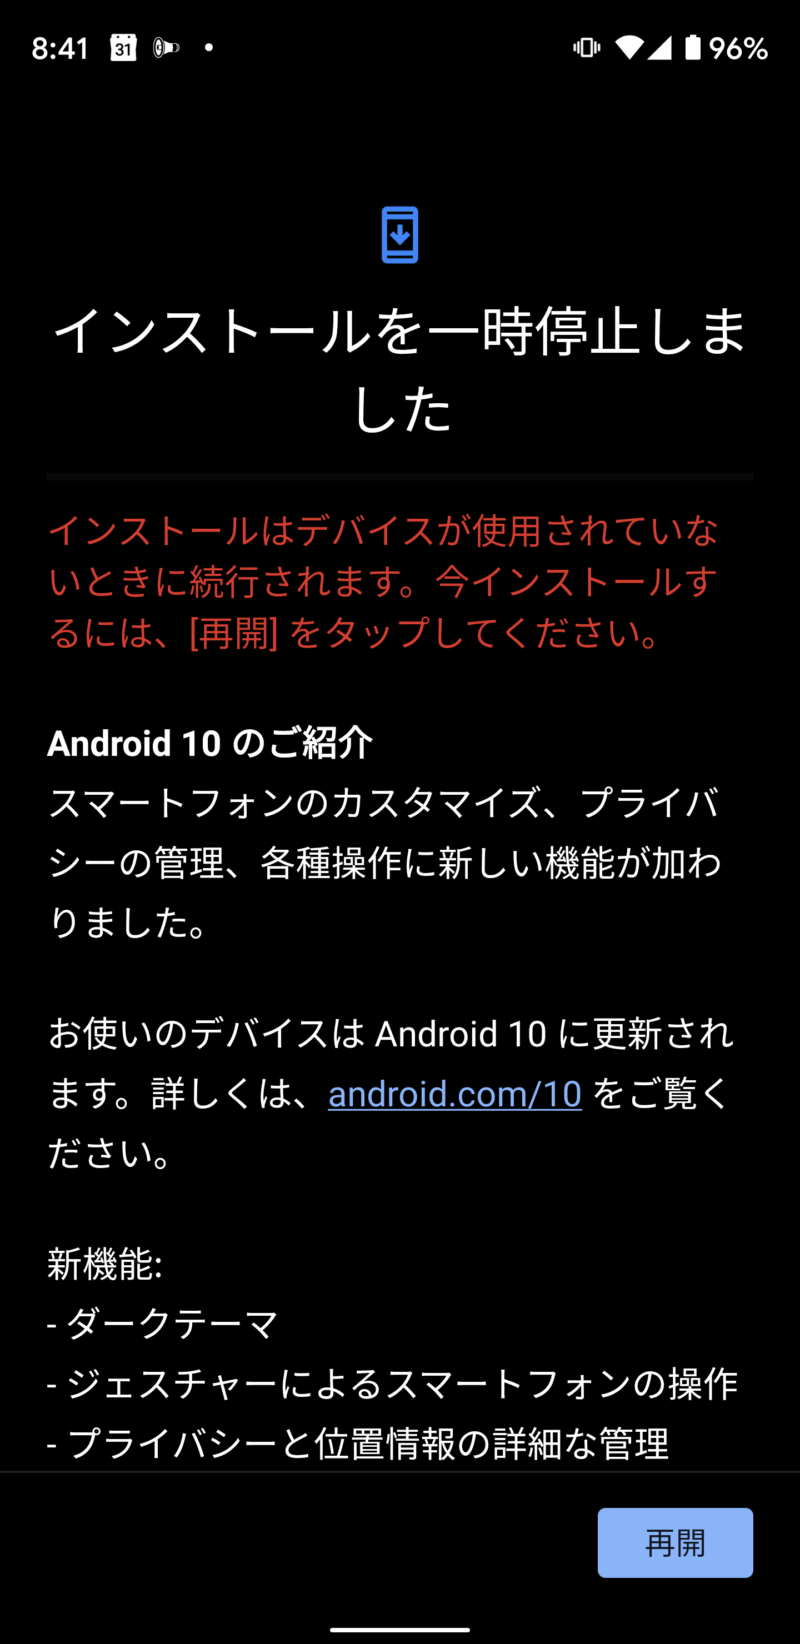 Android 10 がロールアウト アップデートにかかる時間は わたしにゅーす Me Ow News